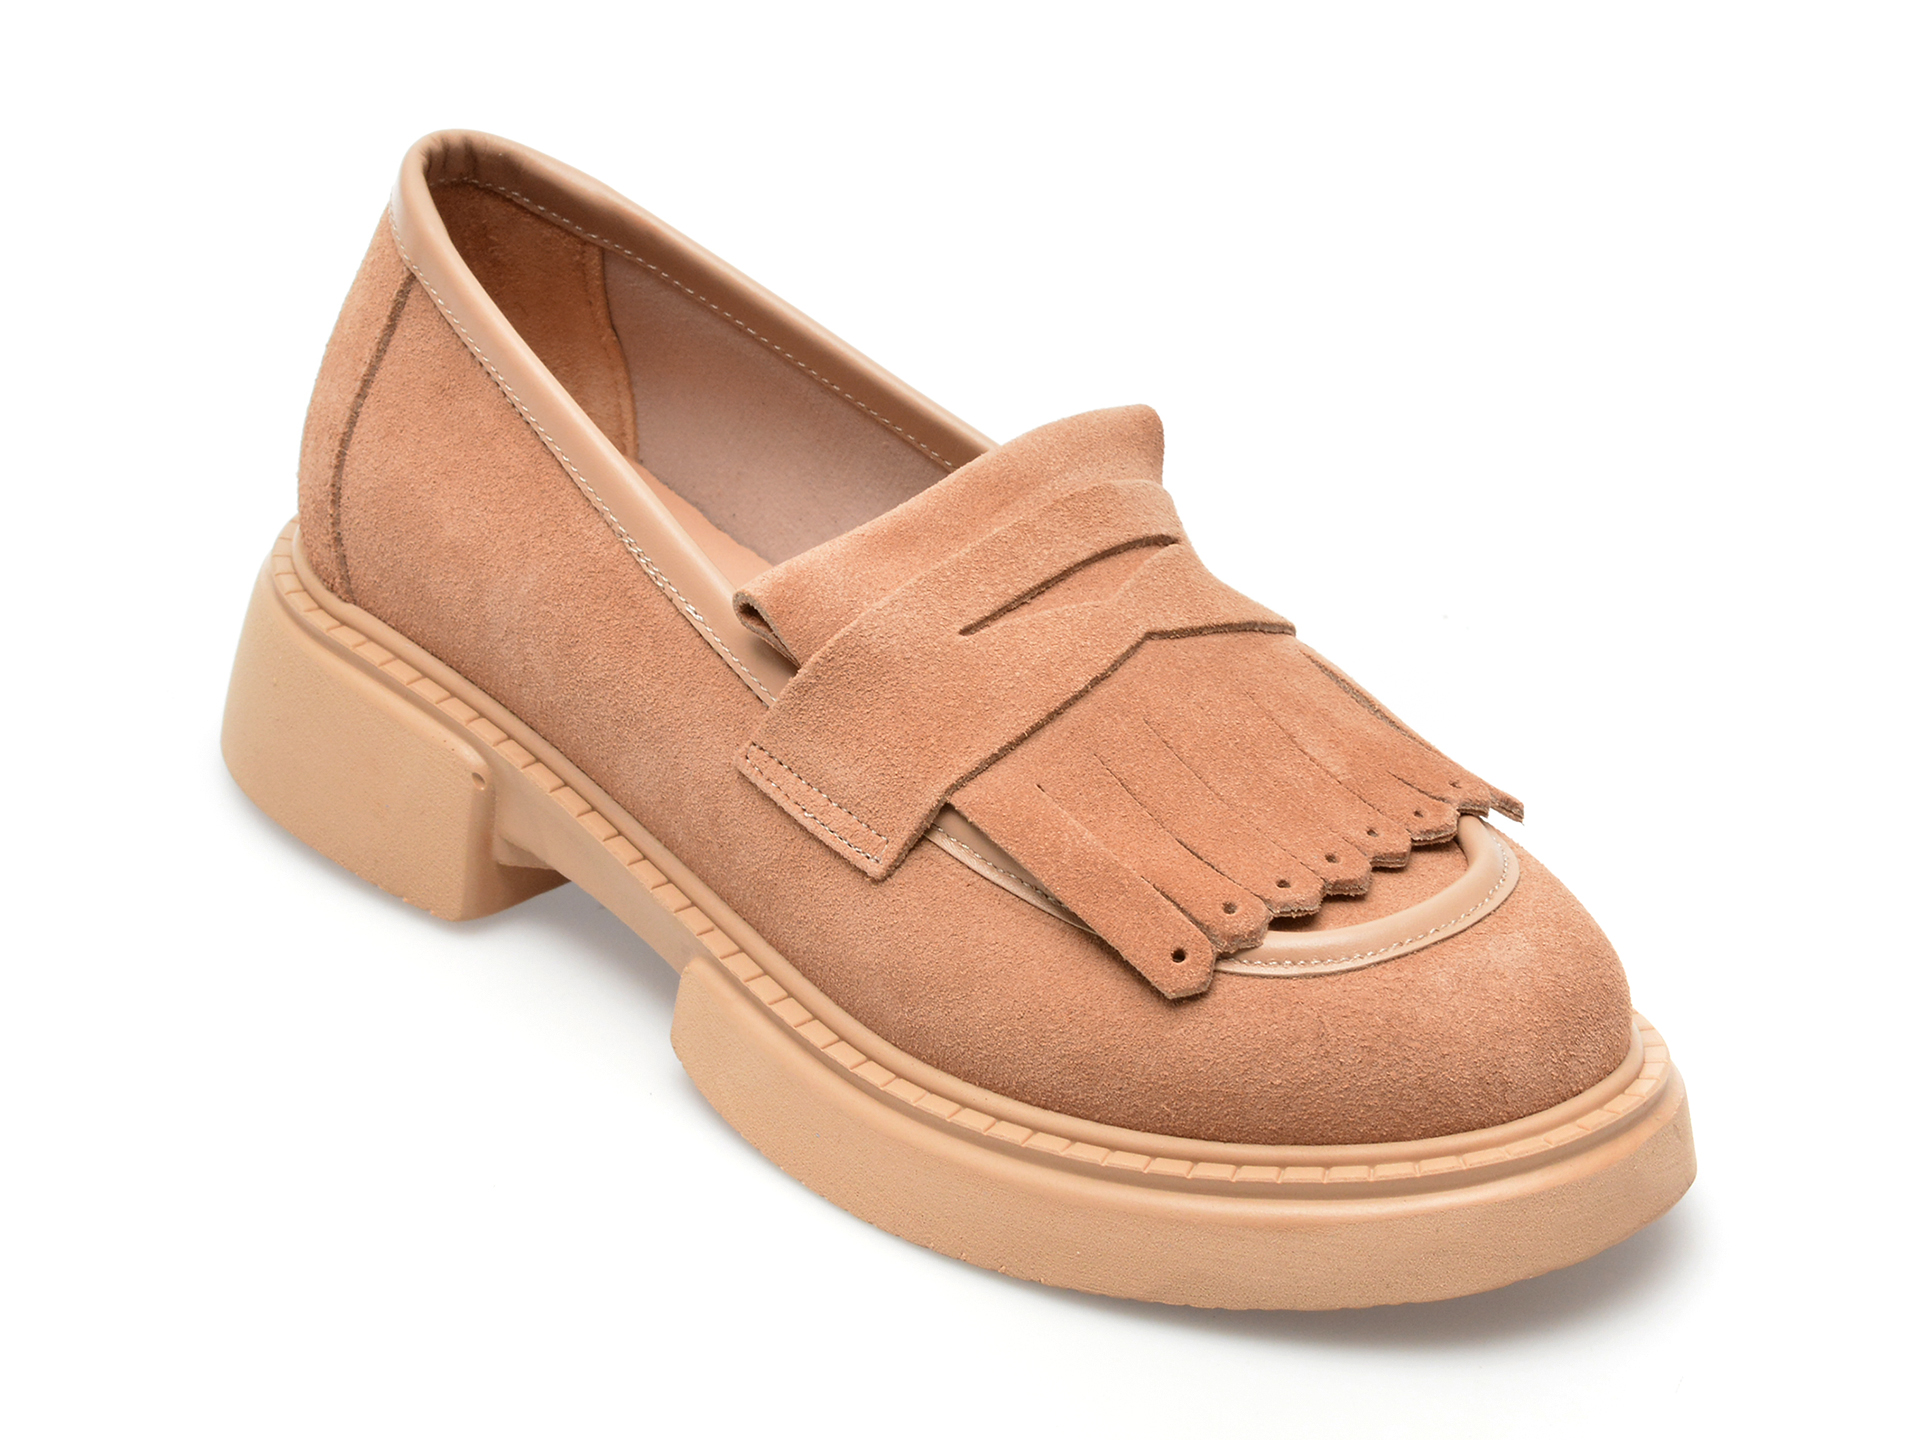 Pantofi EPICA maro, 116723, din piele intoarsa Femei 2023-11-29